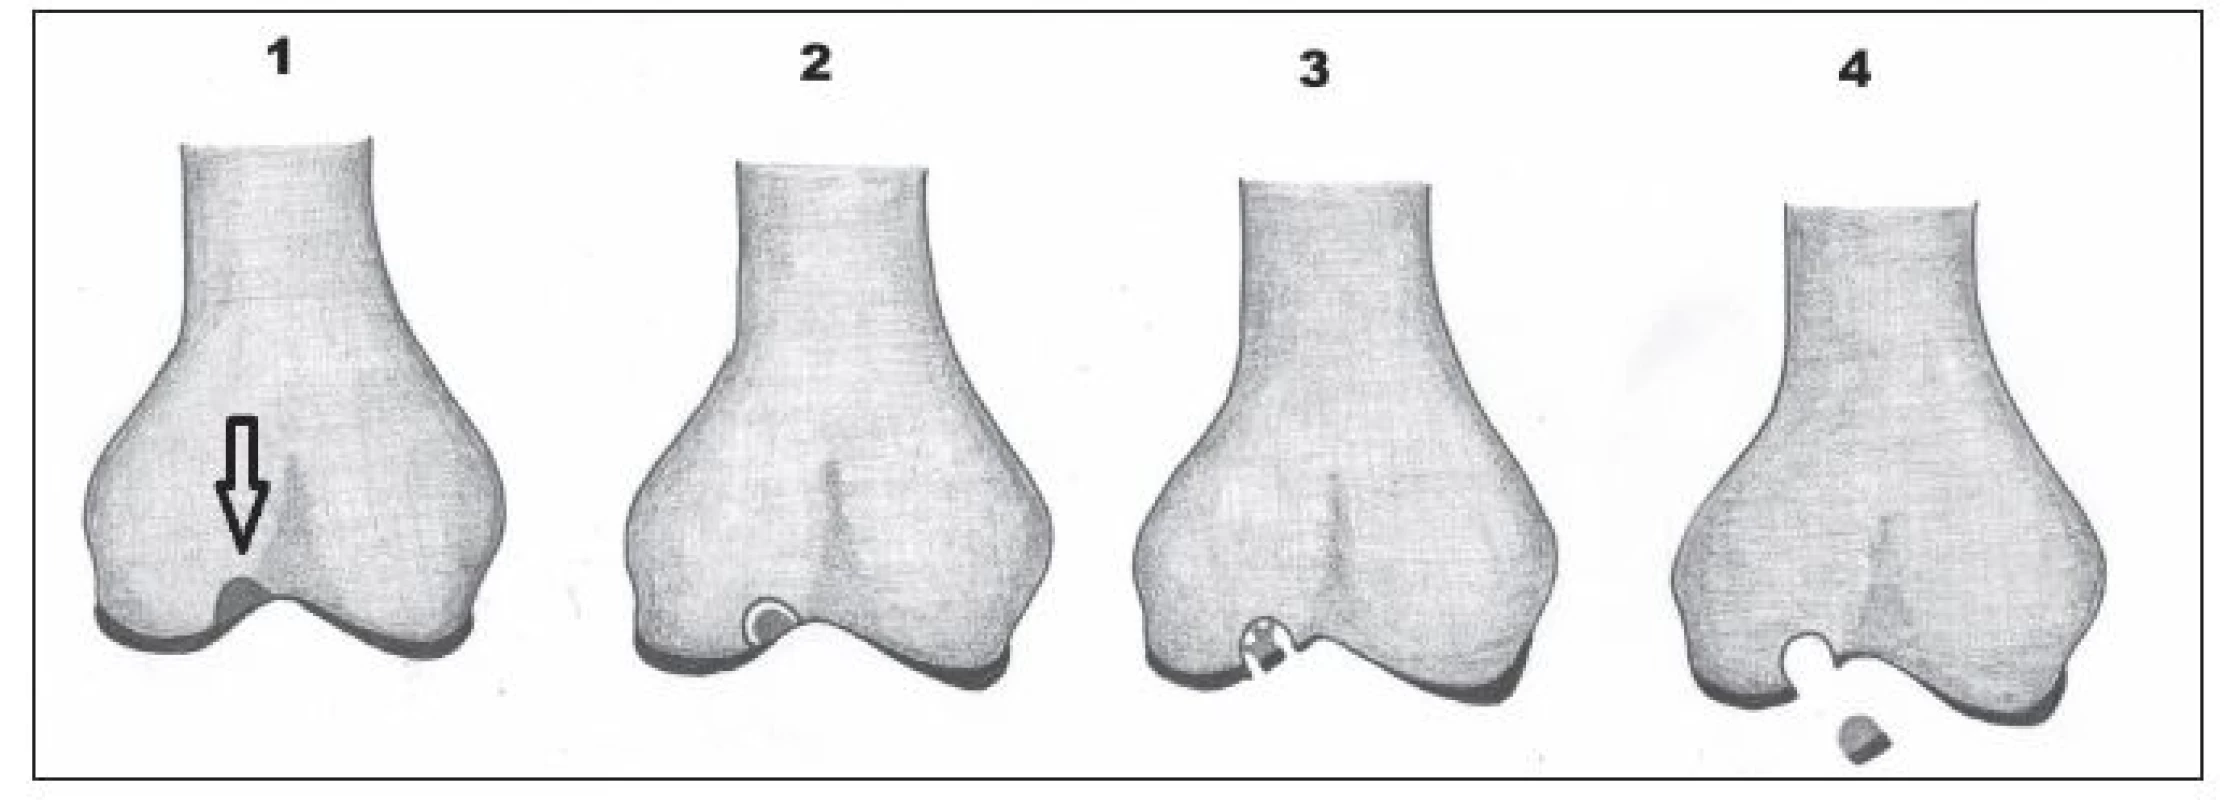 Stádia disekující osteochondritidy 1–4. 1 – vyznačená stabilní léze v kosti, 2 – naznačené odloučení fragmentu v kosti,
3 – fragmentace chrupavky, 4 – dislokace fragmentu.